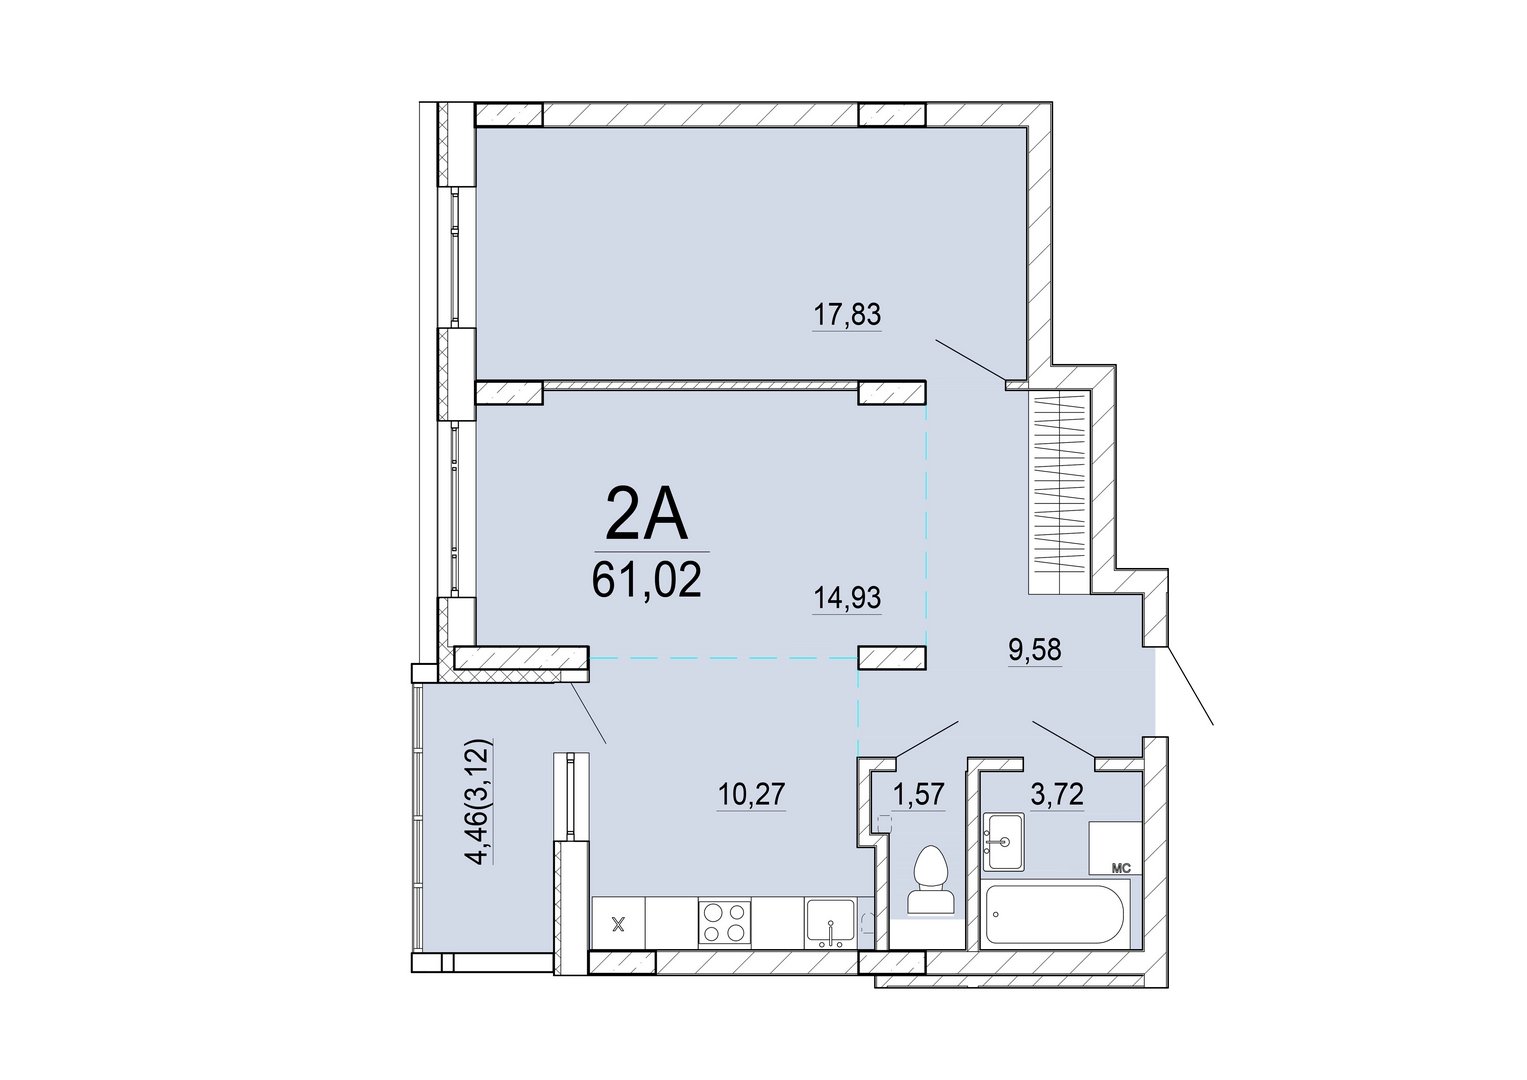 Айрон 2 - комнатная квартира